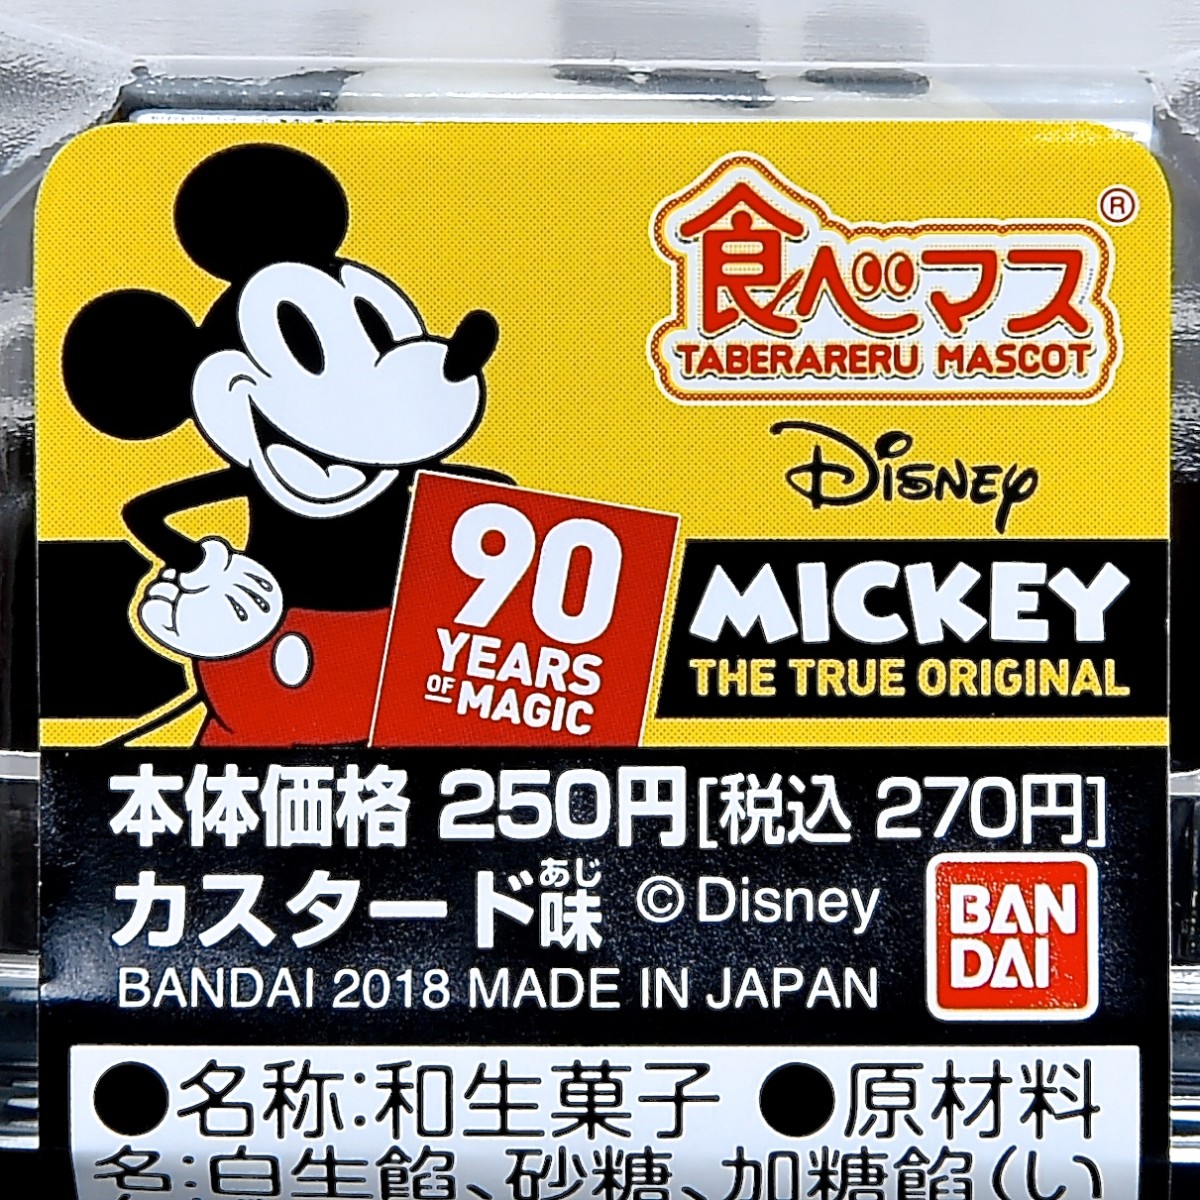 食べマス Disney VINTAGE ver.「ミッキーマウス」パッケージ